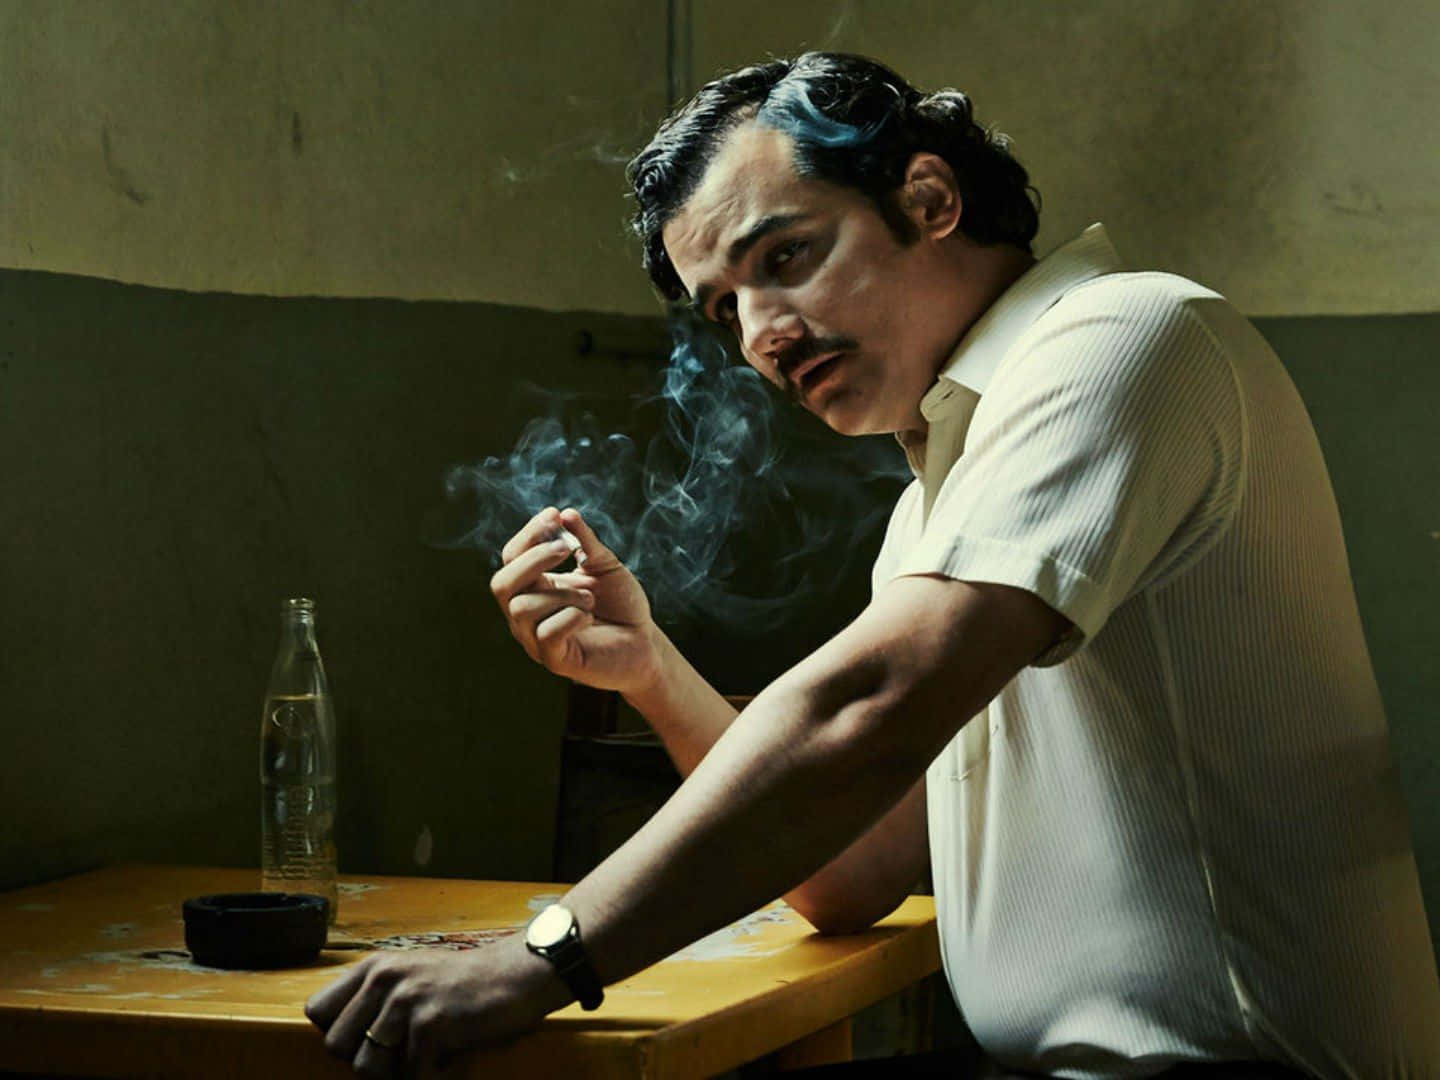 Kolumbianischerdrogenboss Pablo Escobar